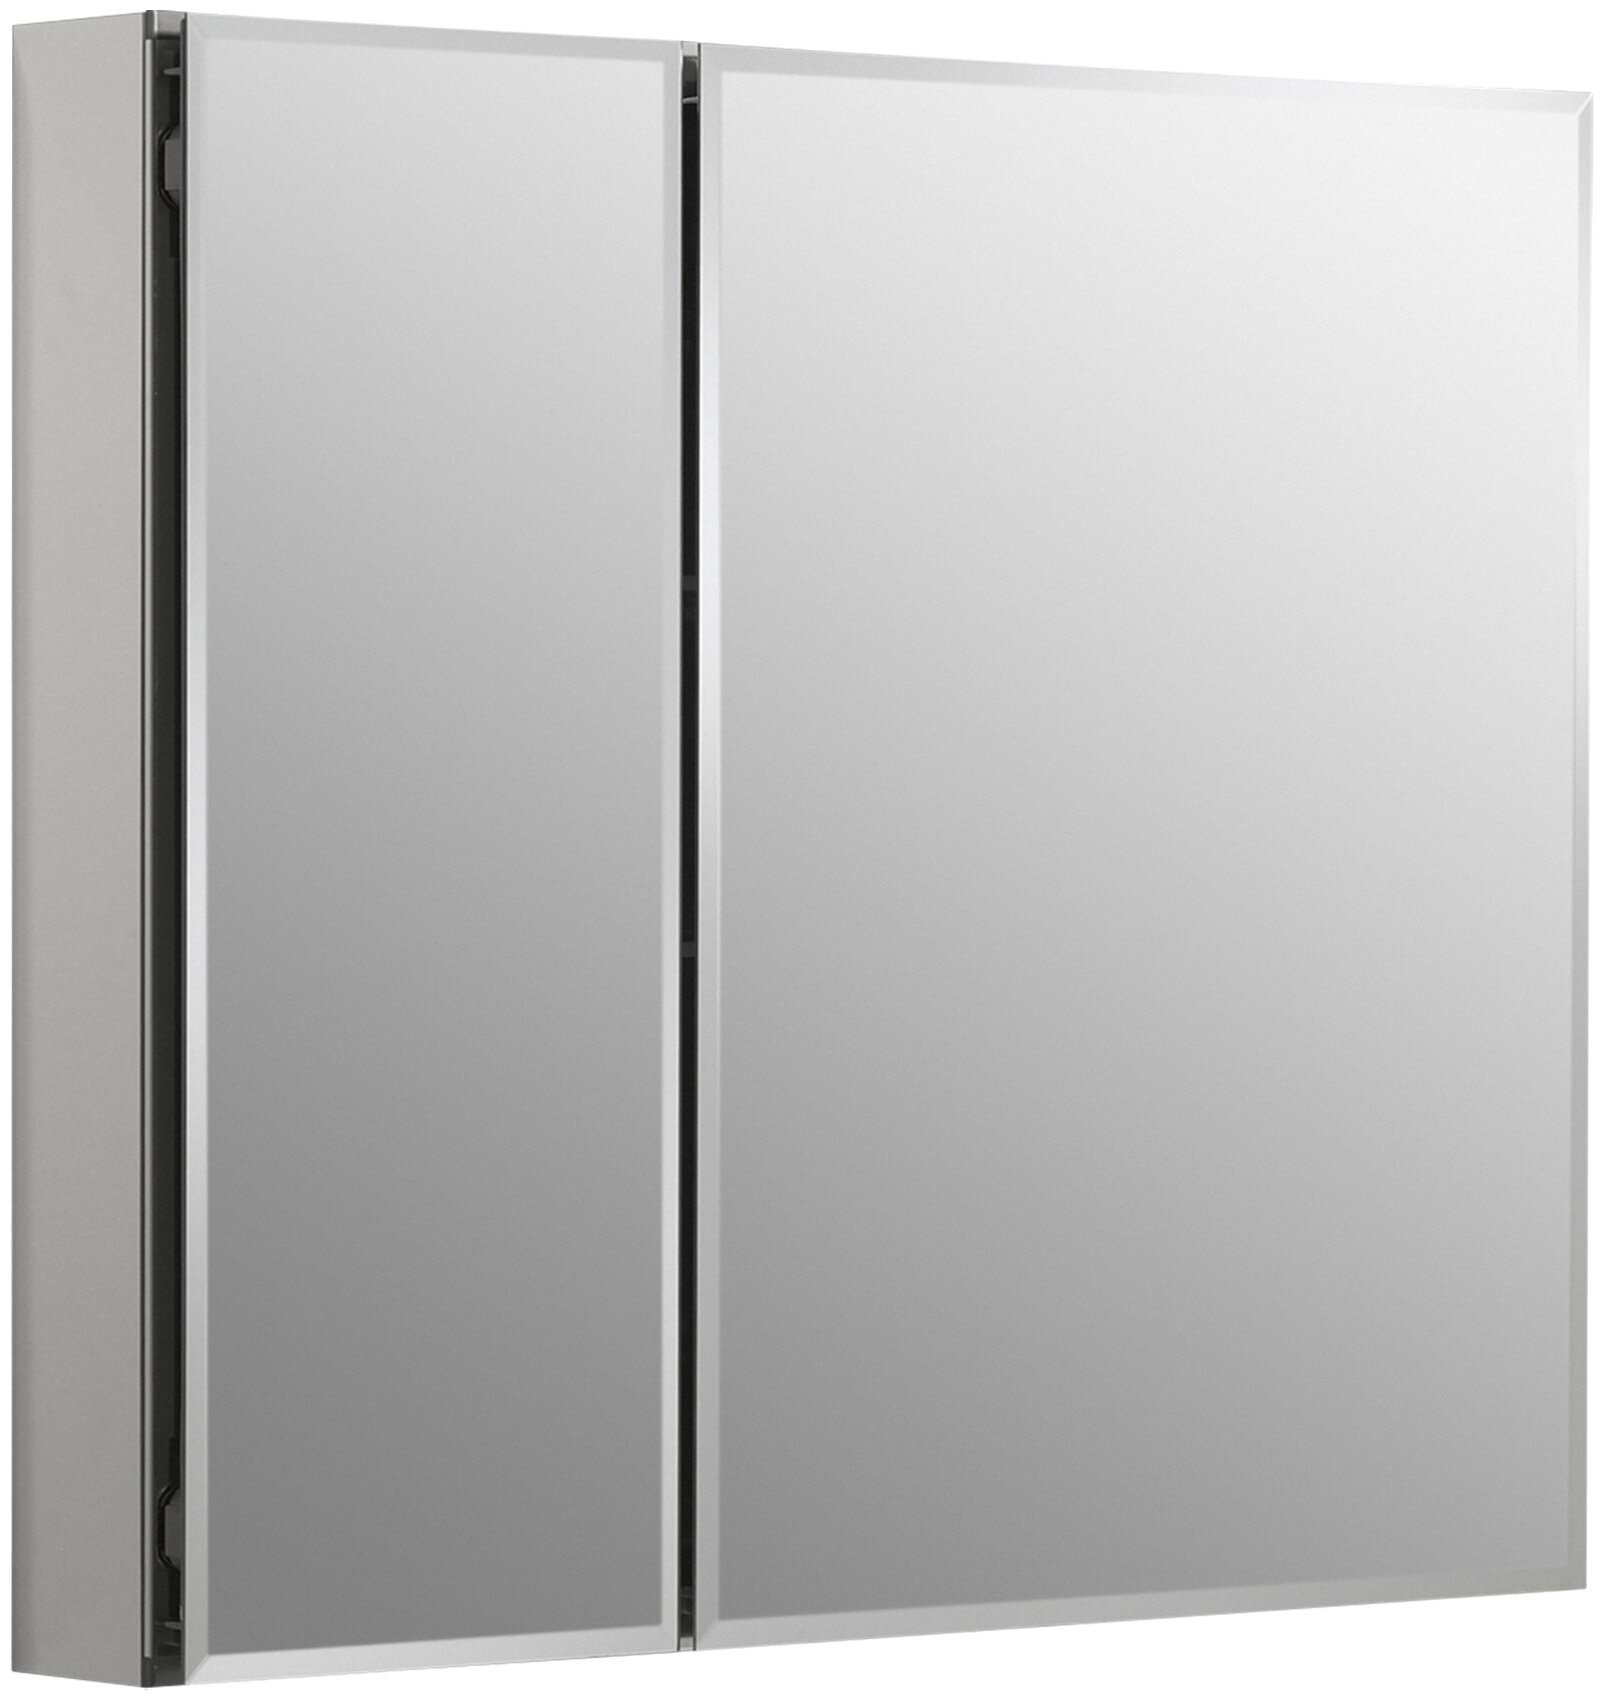 K-CB-CLC3026FS Kohler CLC Aluminum Two-Door Medicine Cabinet With Mirrored  Doors, Beveled Edges  Reviews Wayfair